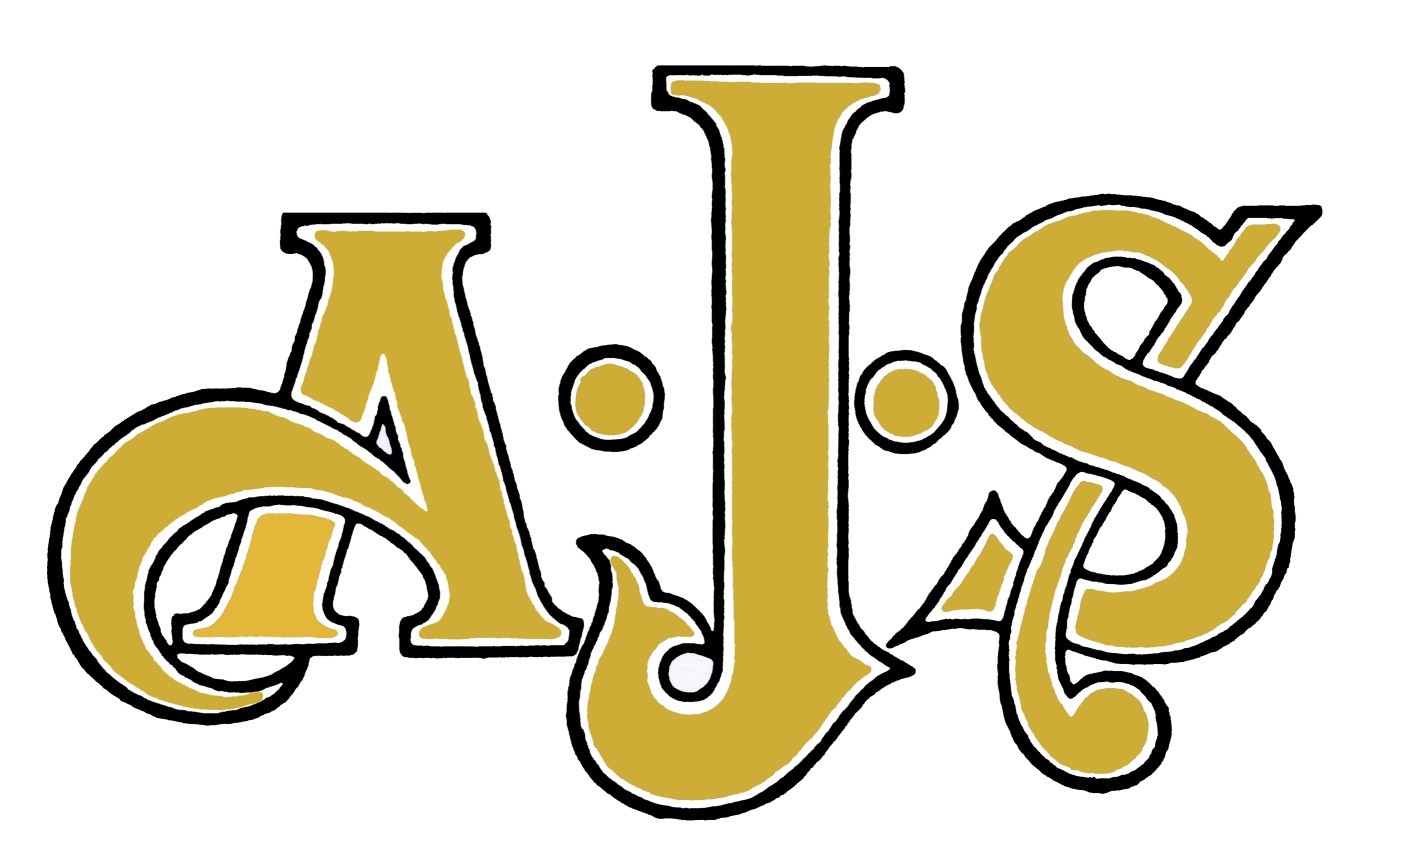 AJS Logo Wallpaper